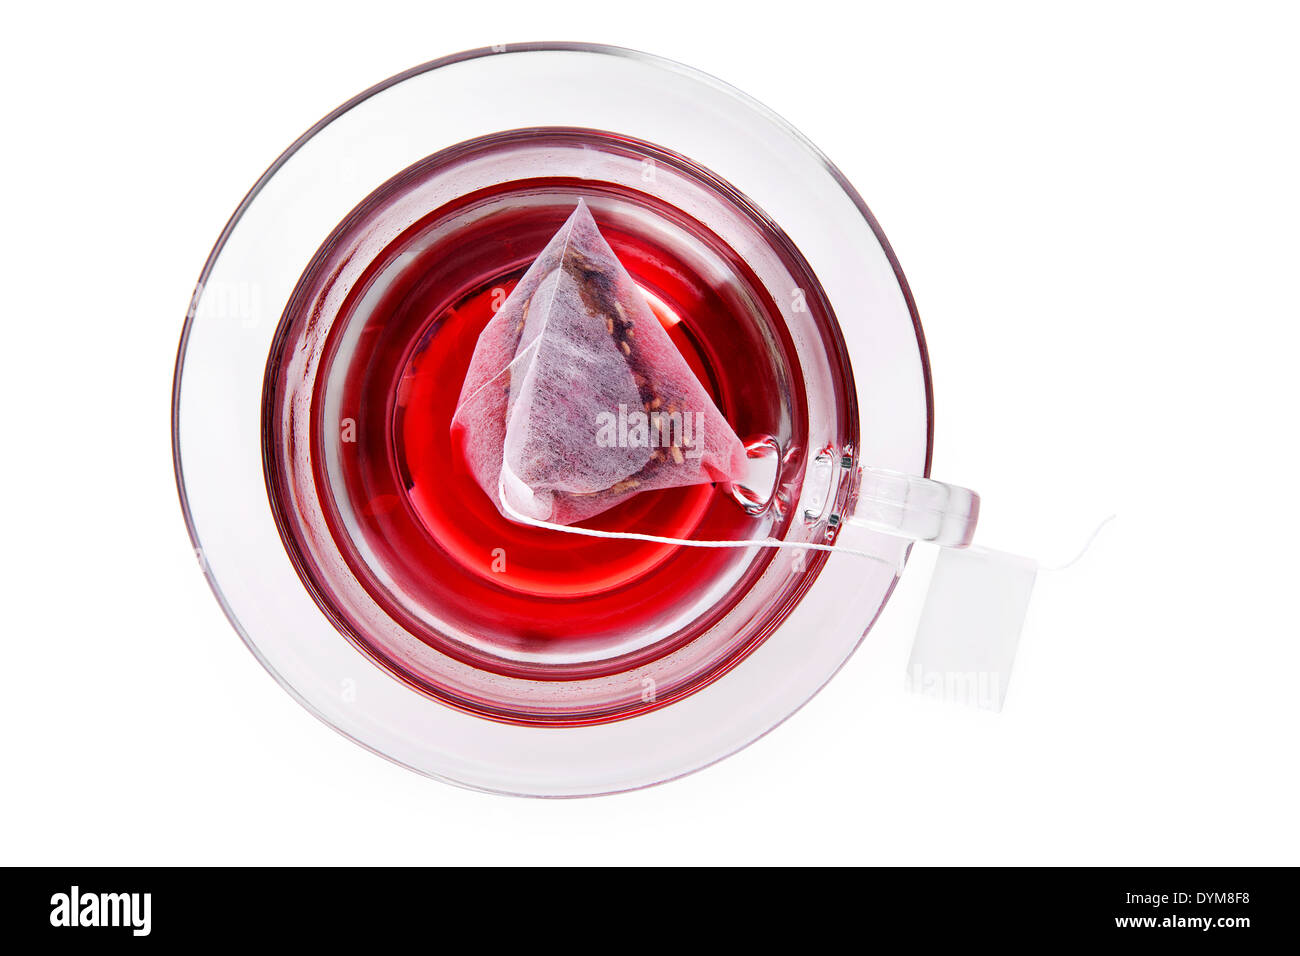 Roter Früchtetee in transparentem Glas Becher mit Teebeutel mit leere Beschriftung, Draufsicht isolierten auf weißen Hintergrund mit Beschneidungspfad. Stockfoto